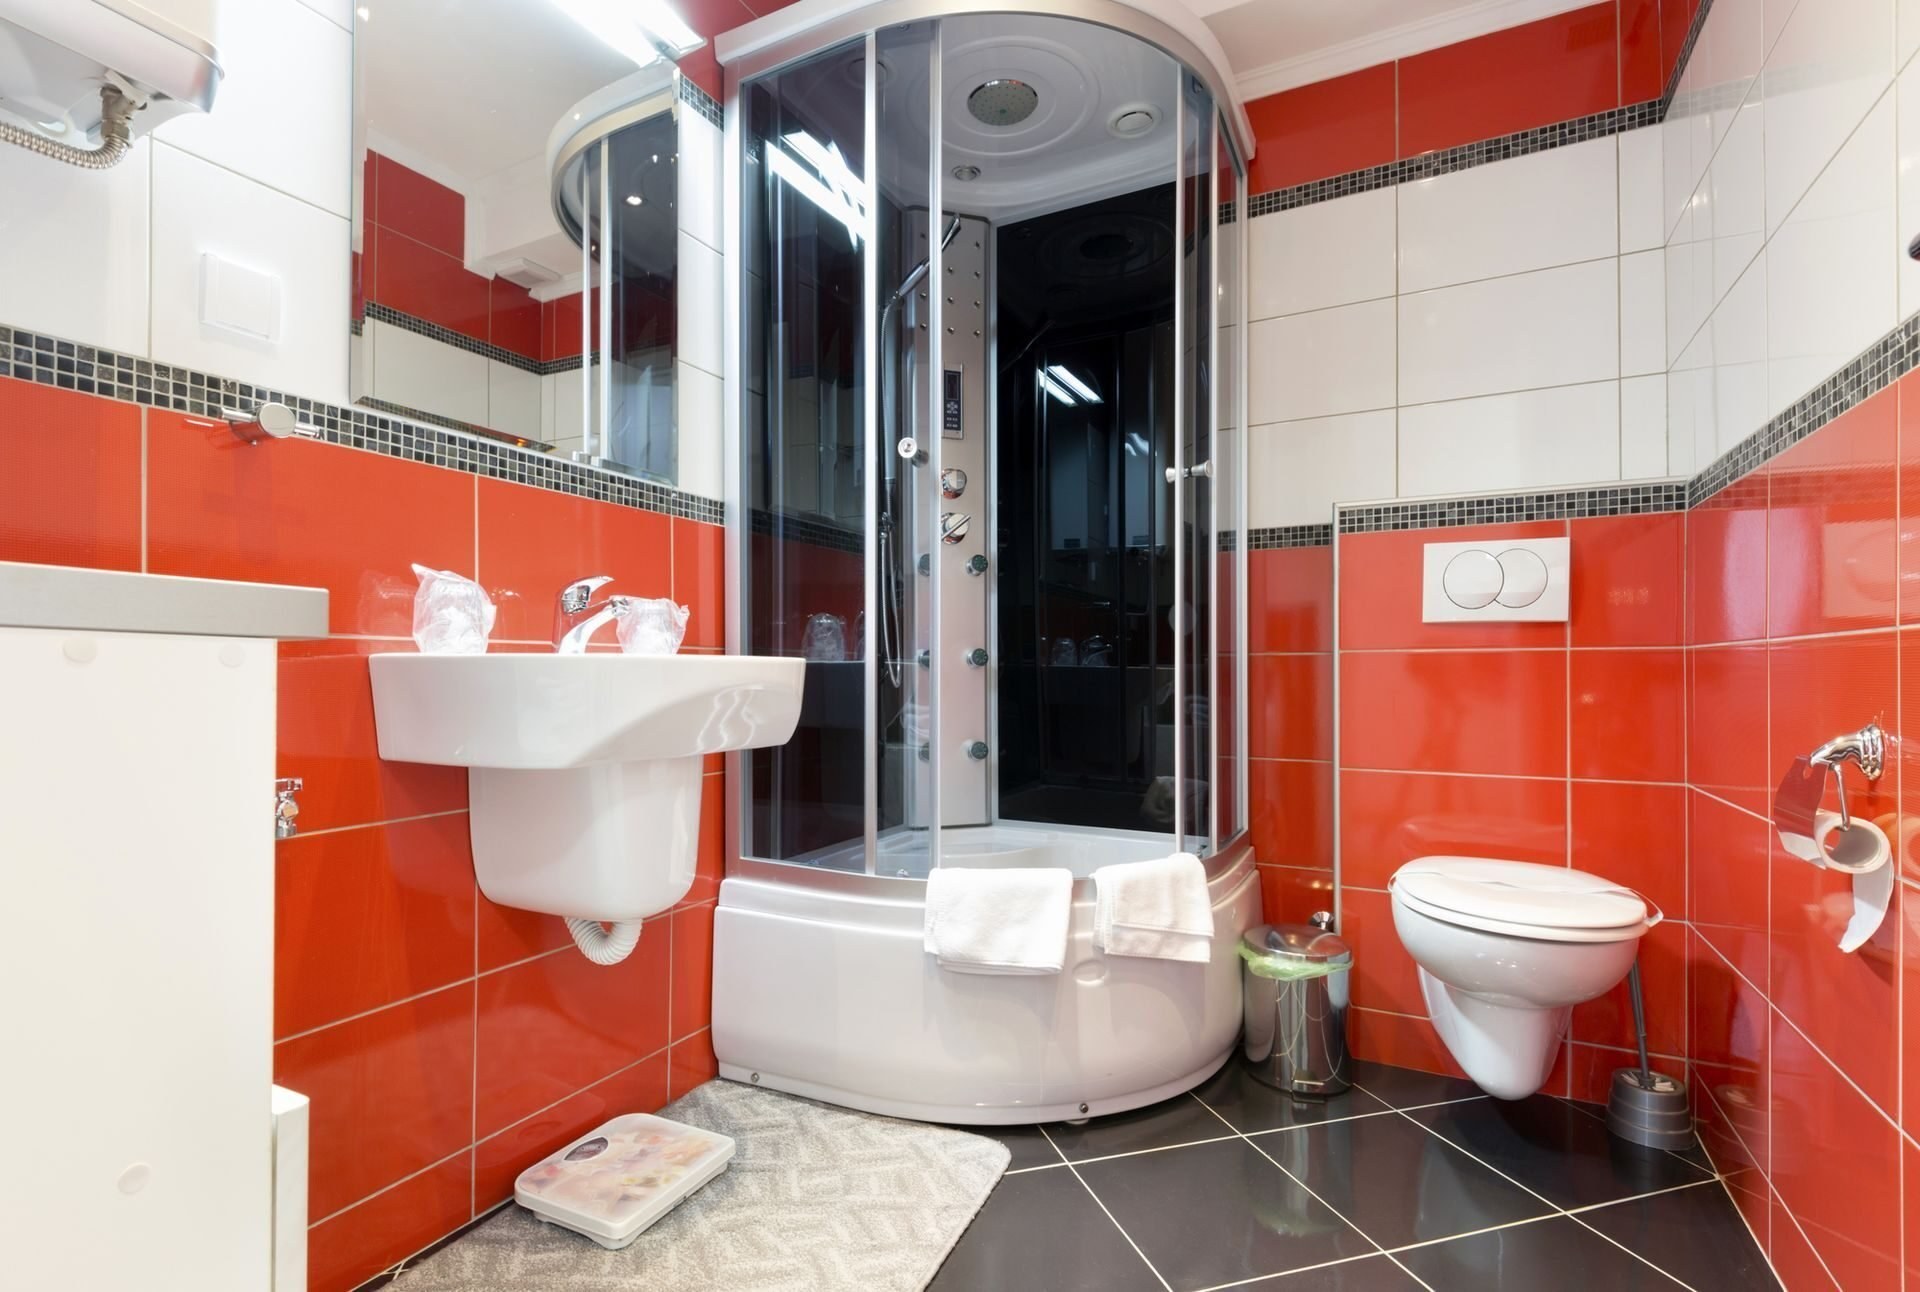 Ремонт ванных комнат и санузла цены. Ванная в Красном цвете. Евроремонт санузла. Ванная под ключ. Красно белая ванная комната.